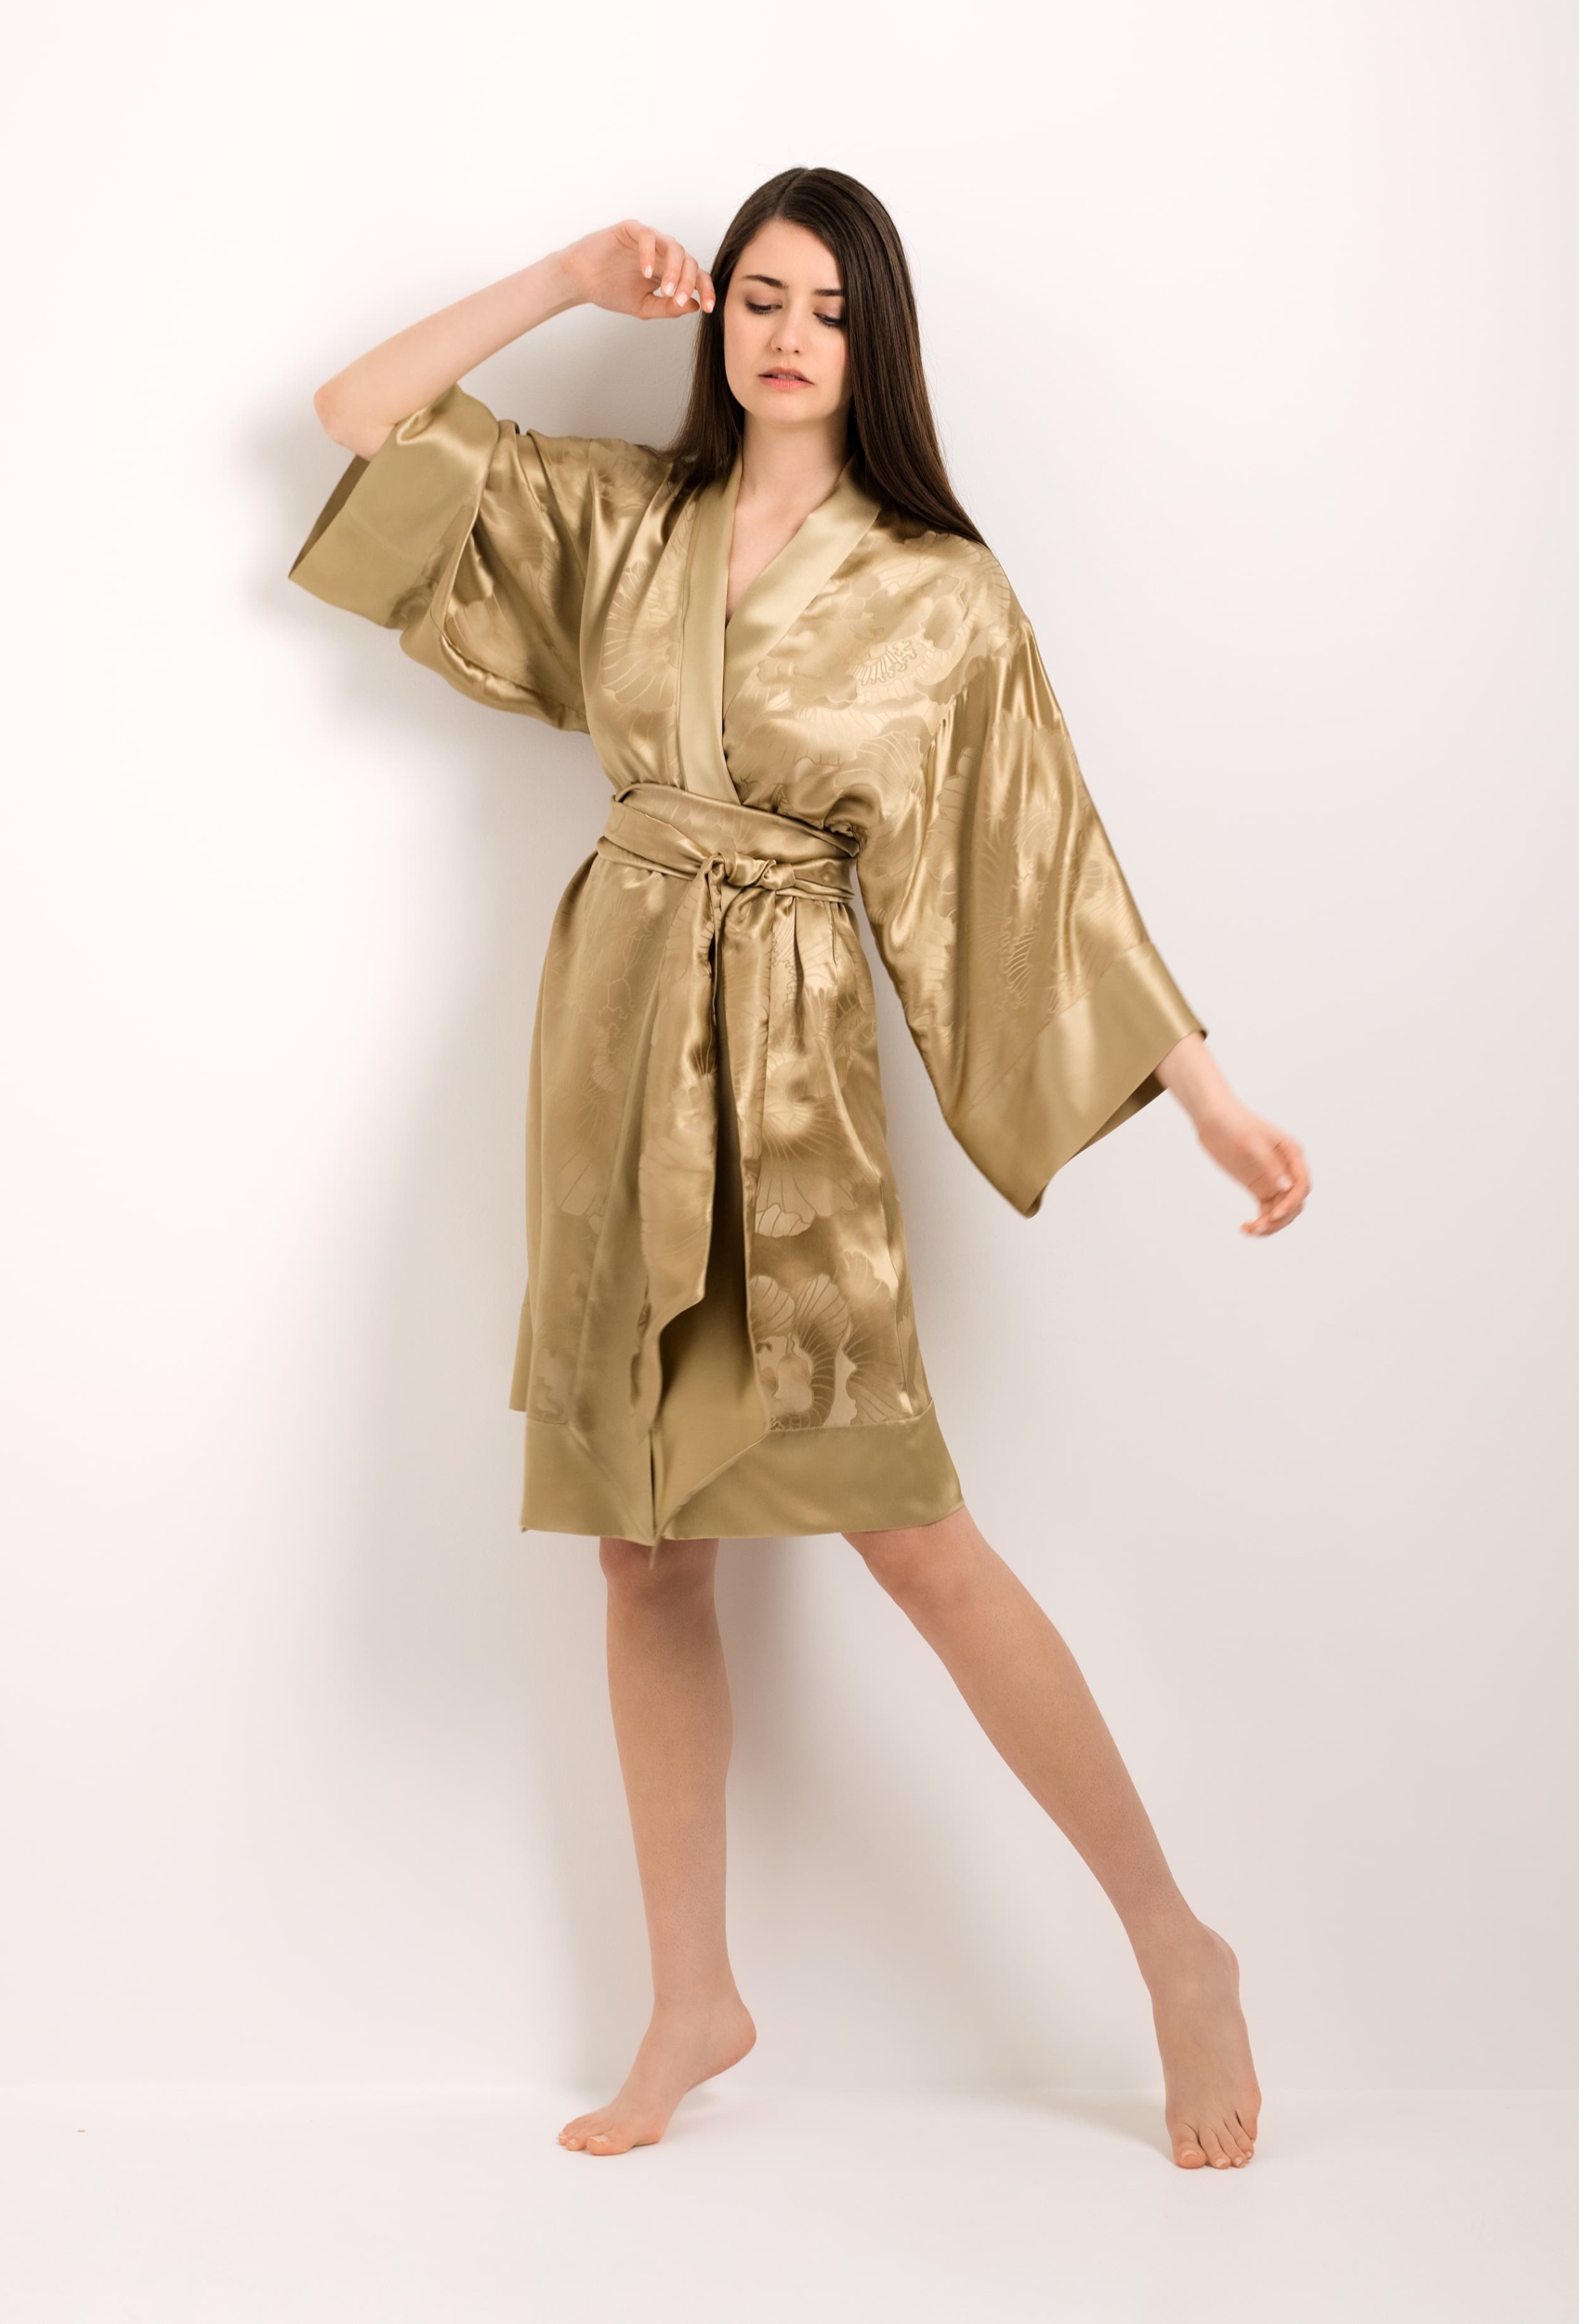 - kimono - gold Jacquard Carine Gilson silk peony